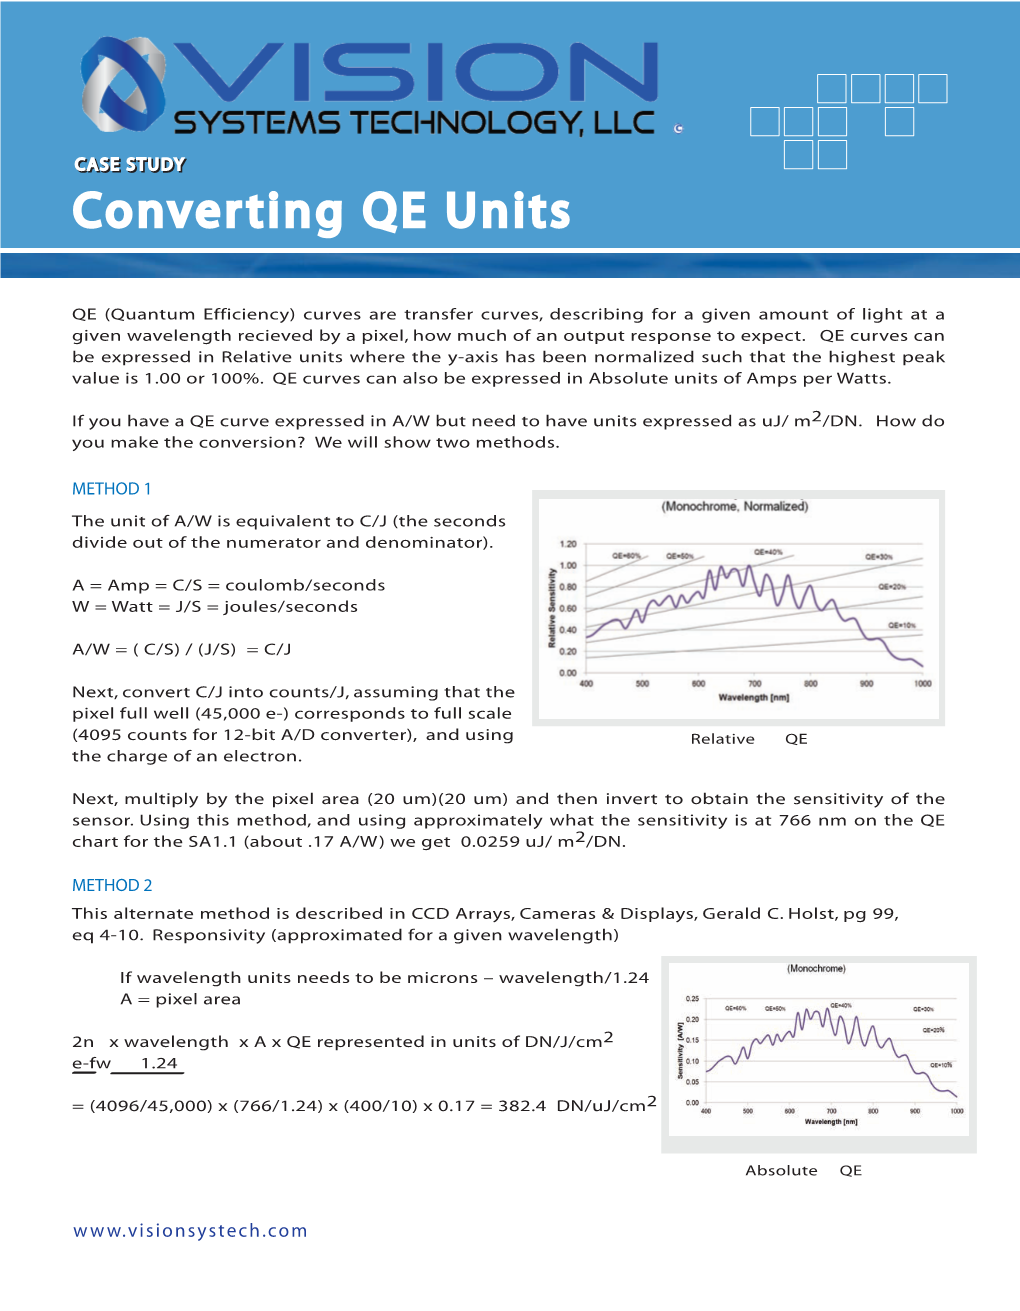 Converting QE Units